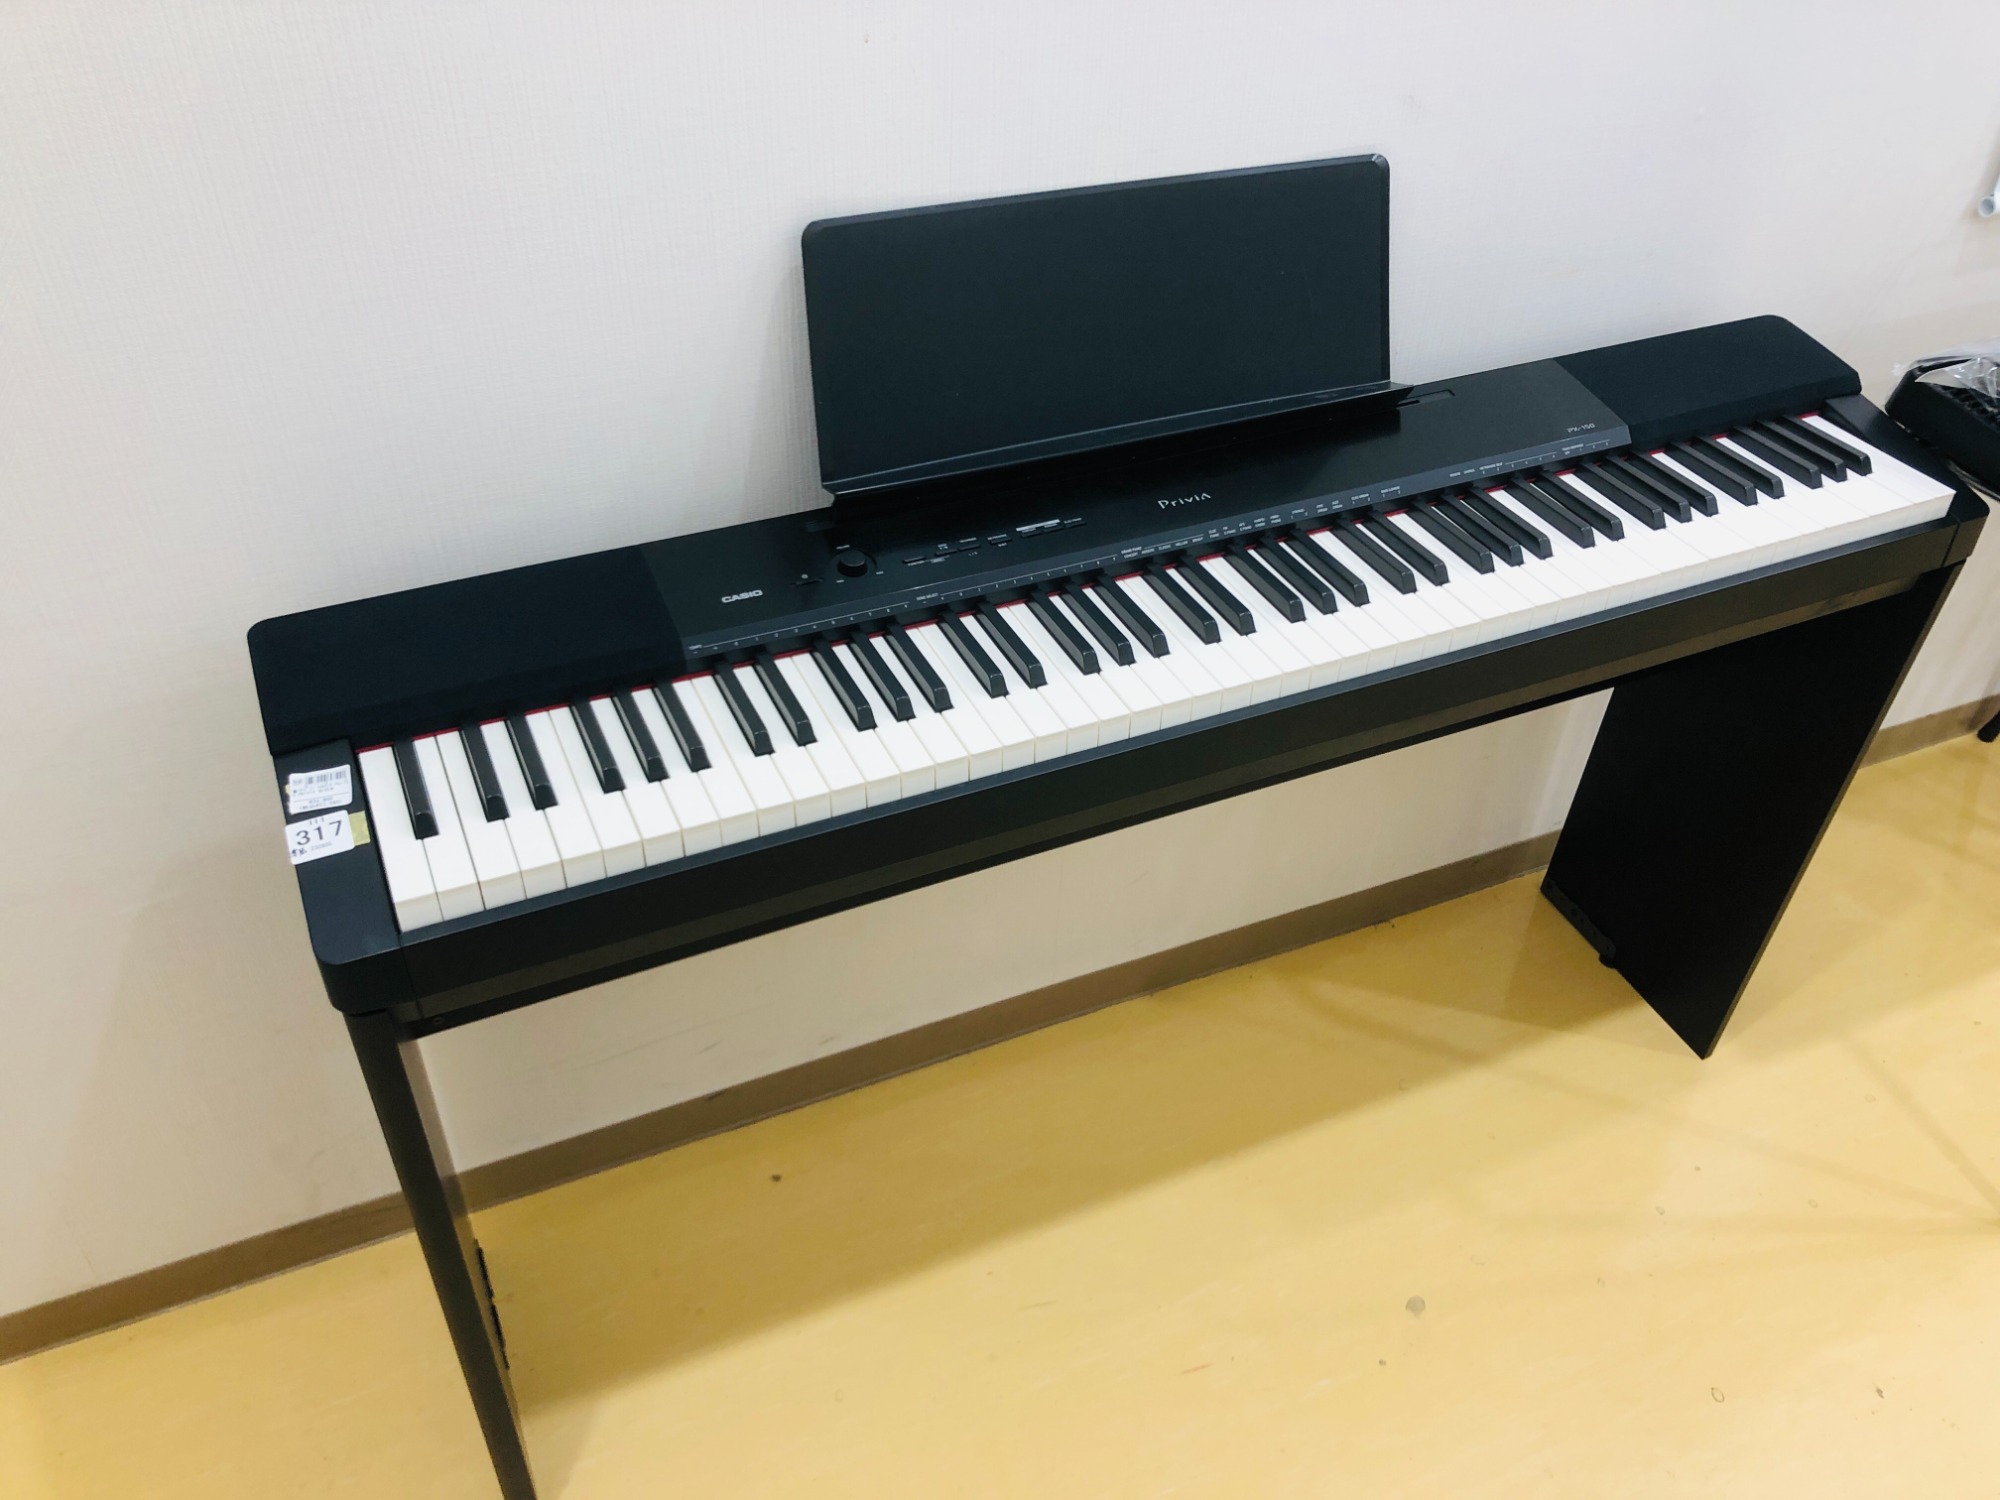 電子ピアノ Privia PX-150